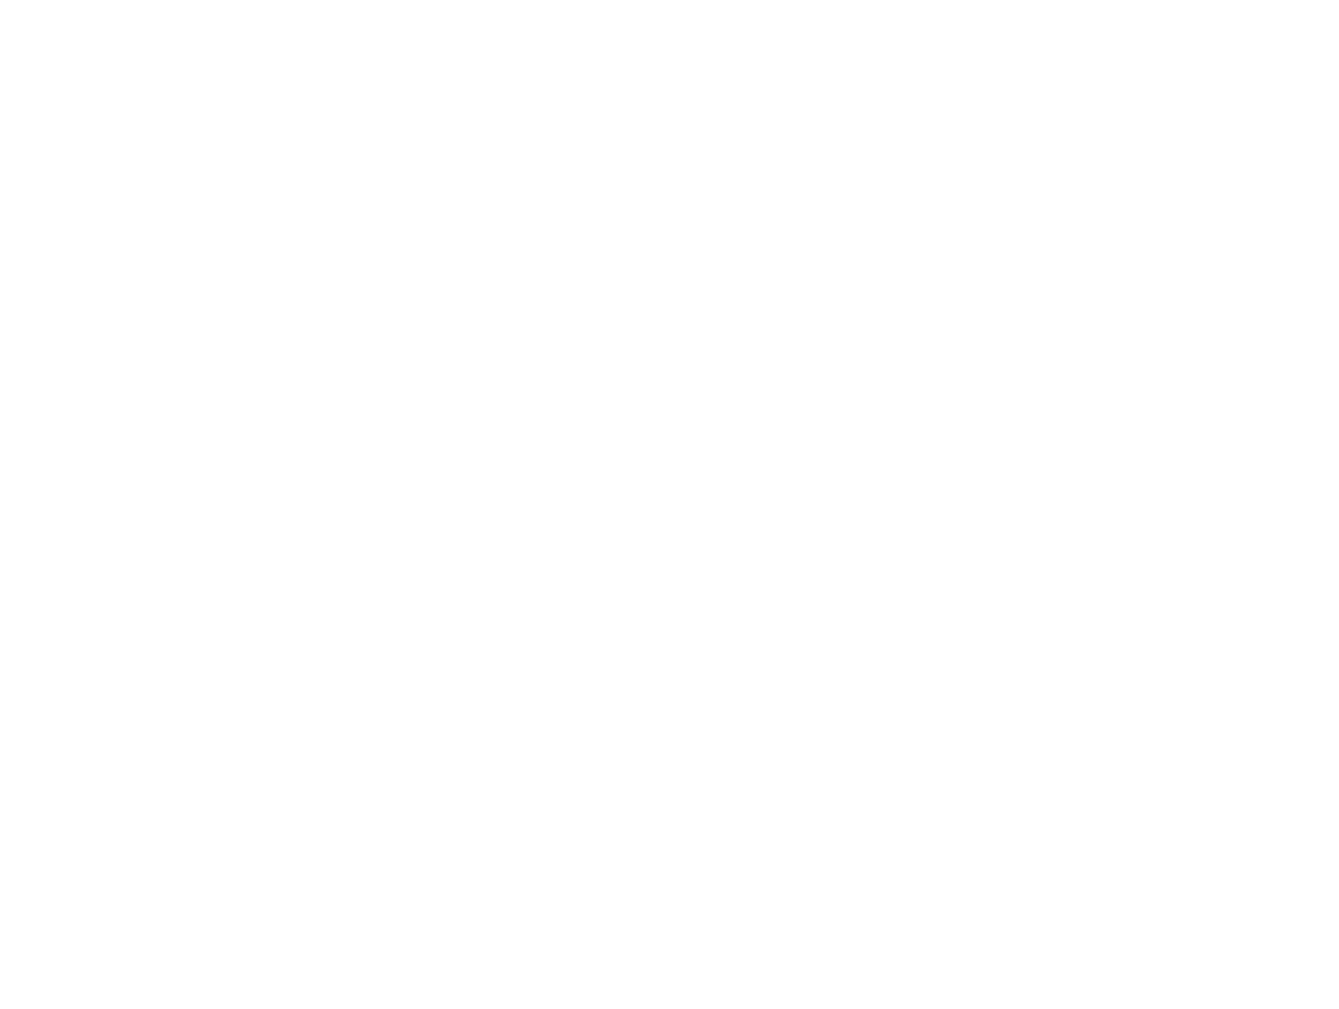 Etienne Moyat - Carved wood Artworks